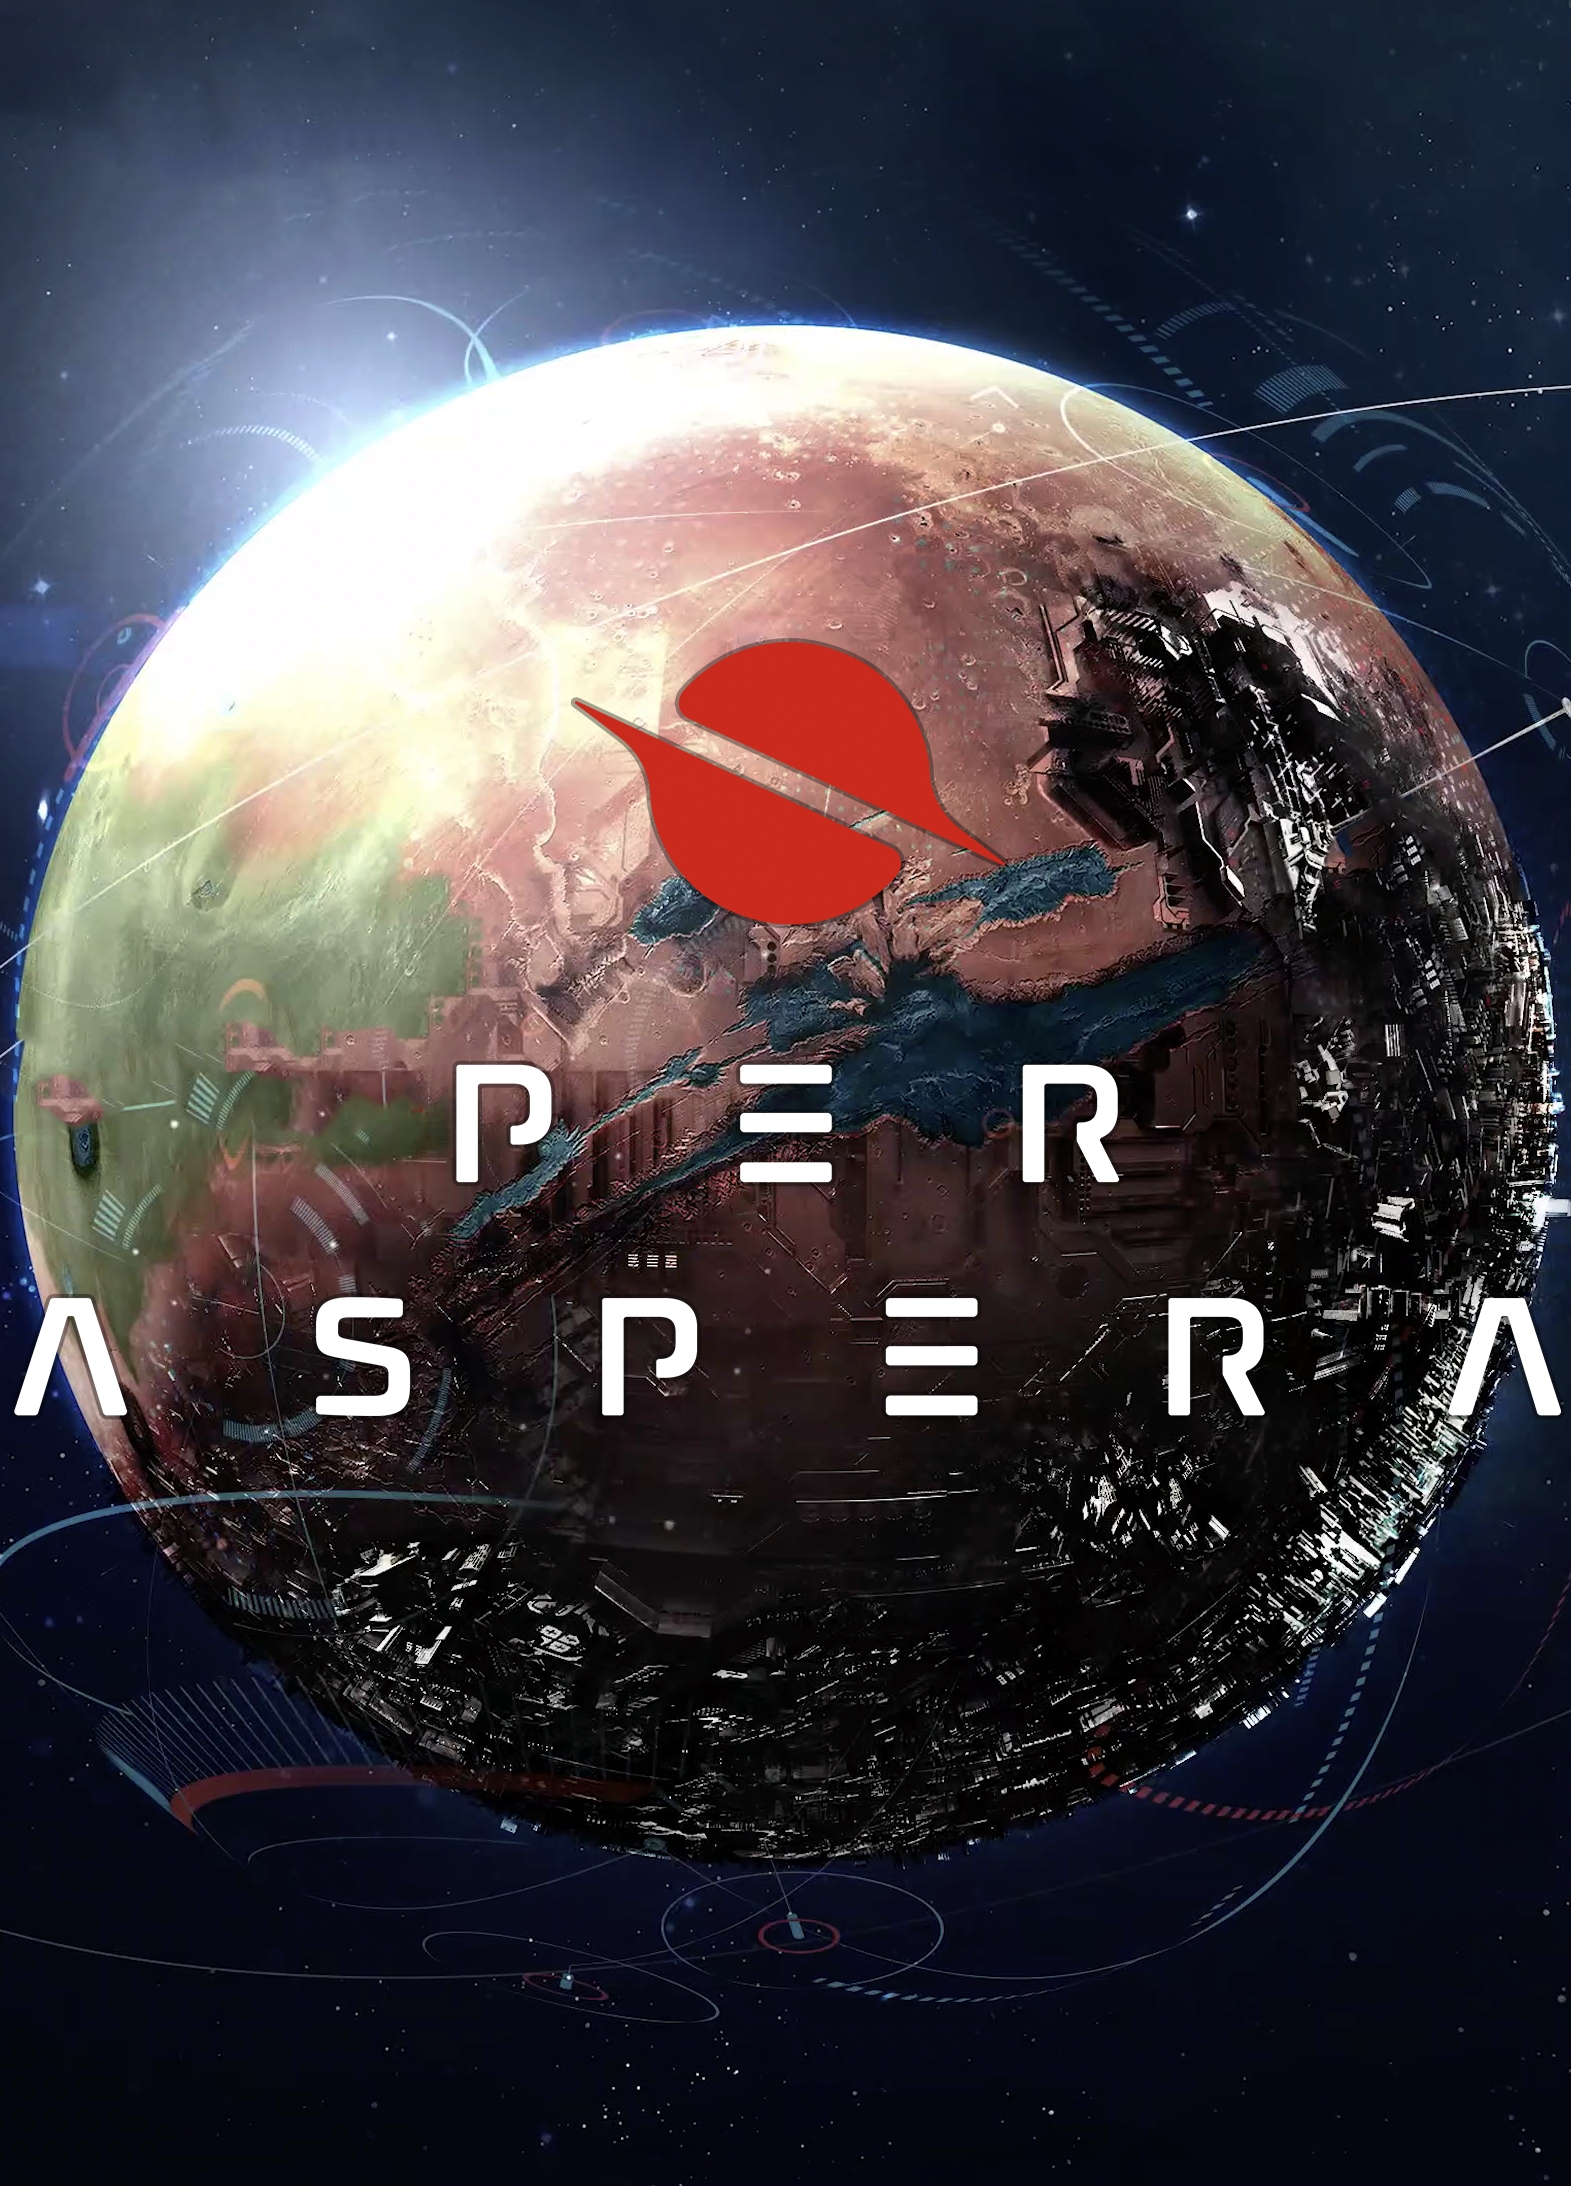 Poster Per Aspera (2020)